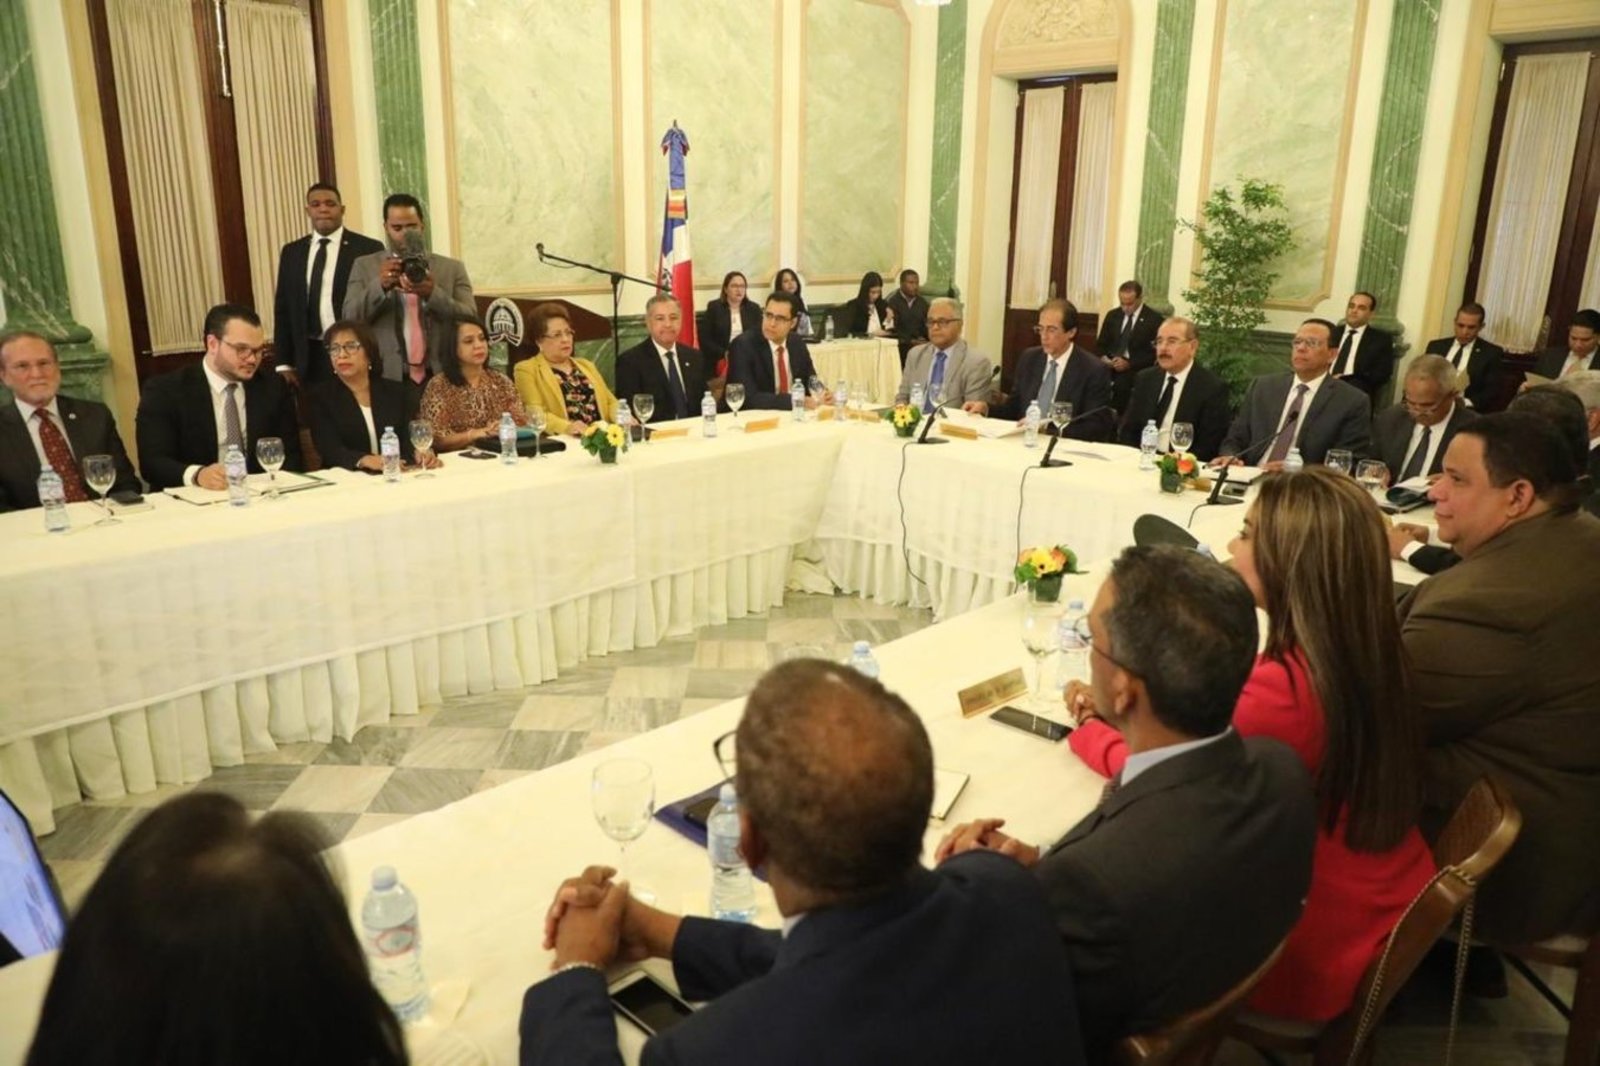 REPÚBLICA DOMINICANA: Gobierno impulsa acciones para fortalecer la seguridad alimentaria en República Dominicana; Danilo Medina encabeza reunión